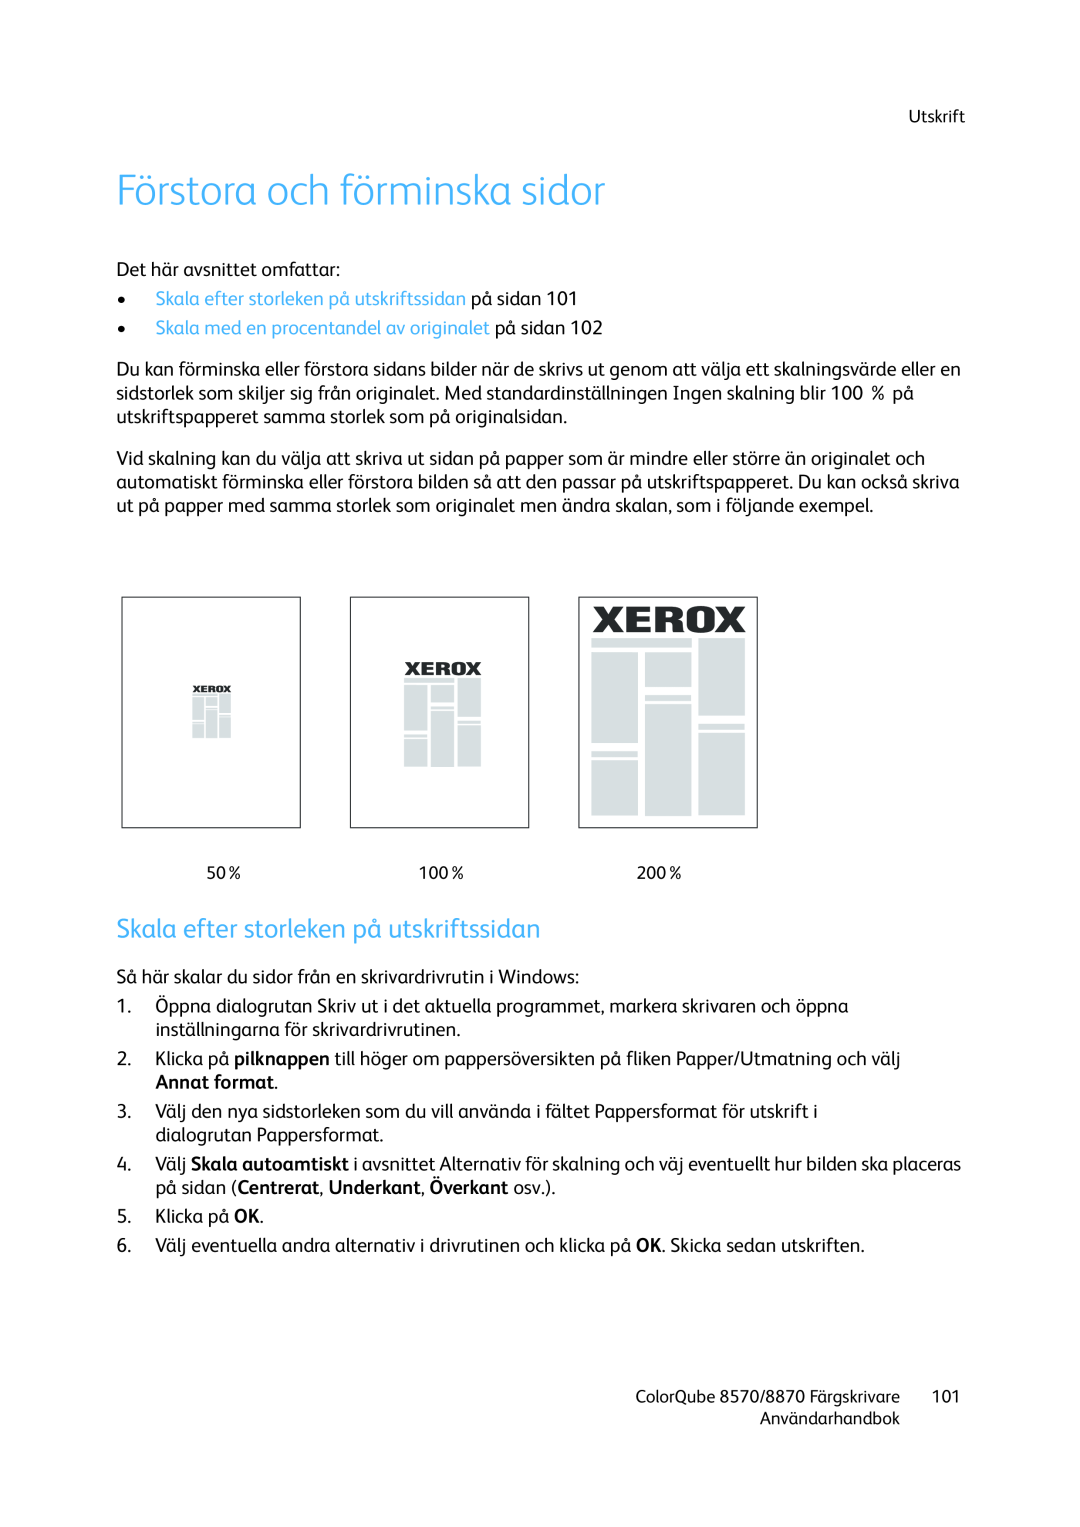 Xerox 8570 / 8870 manual Förstora och förminska sidor, Skala efter storleken på utskriftssidan 